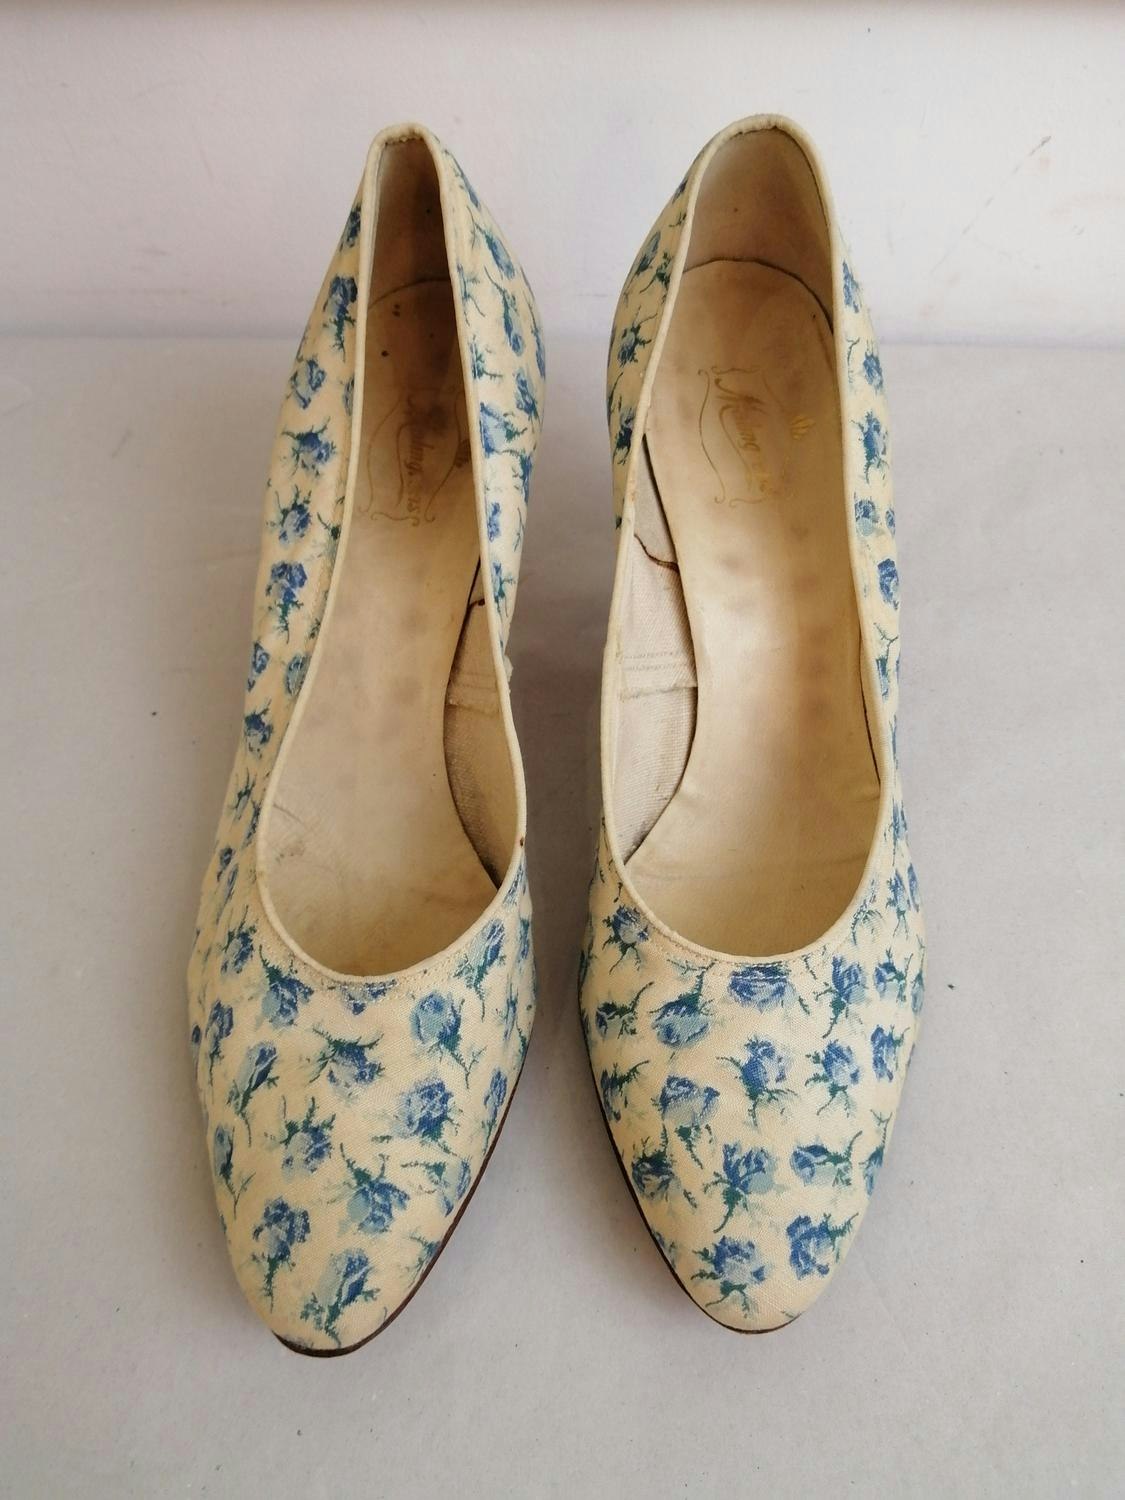 Vintage ljusa högklackade skor pumps blå rosor tyg överdel stl 3738 -  Vintage Corner Österlen